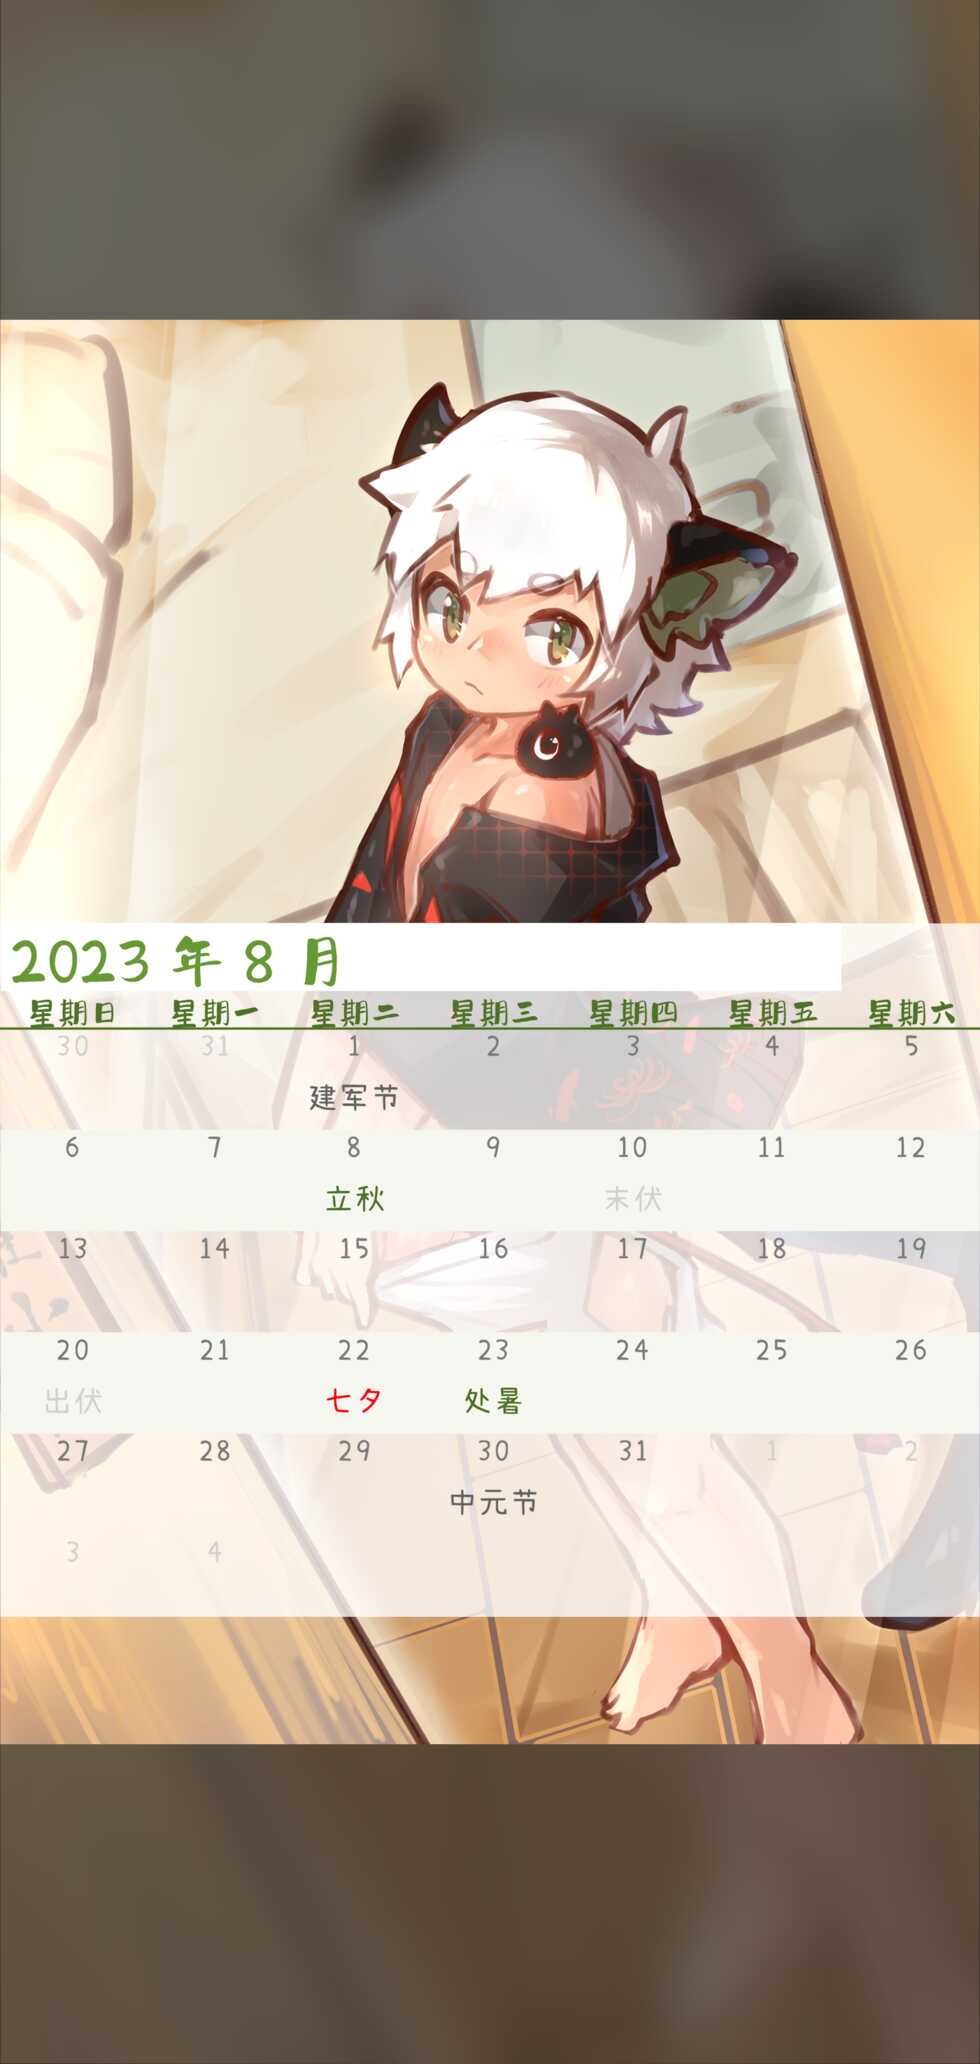 [Suka Genmei] Luo Xiaohei Calendar - Page 11